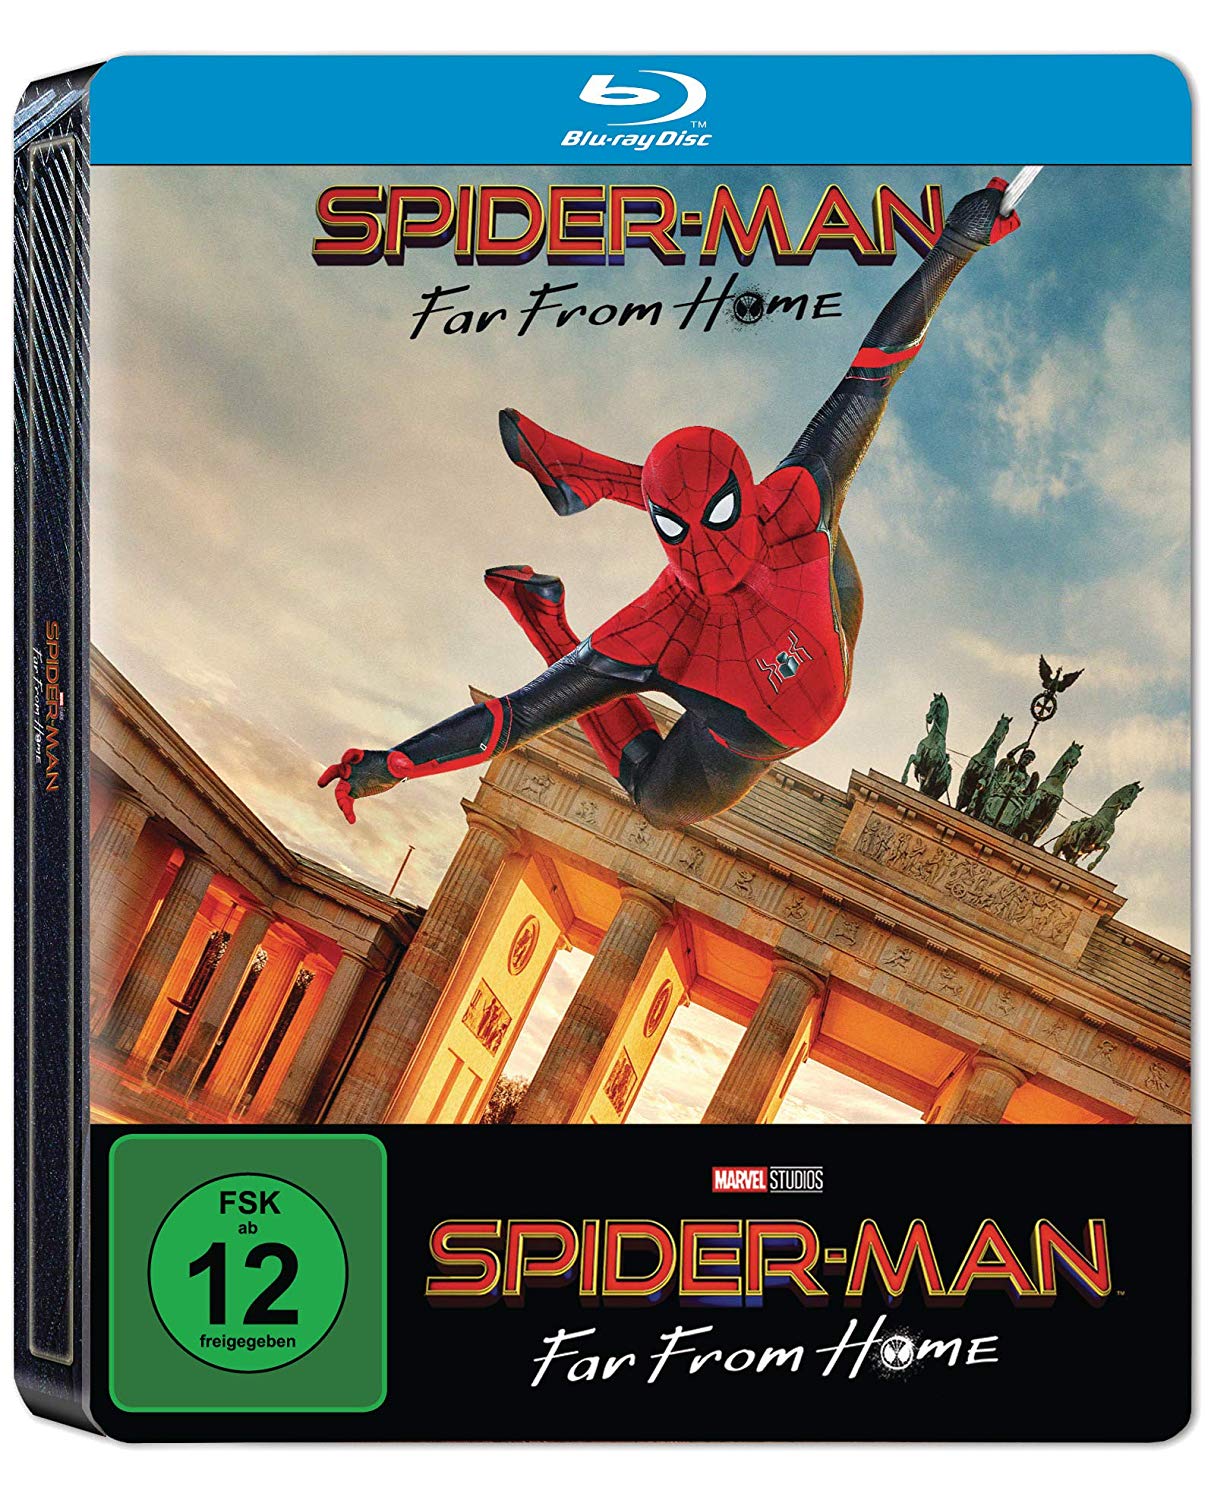 Spider-man-Far-From-Home-steelbook-DE.jpg